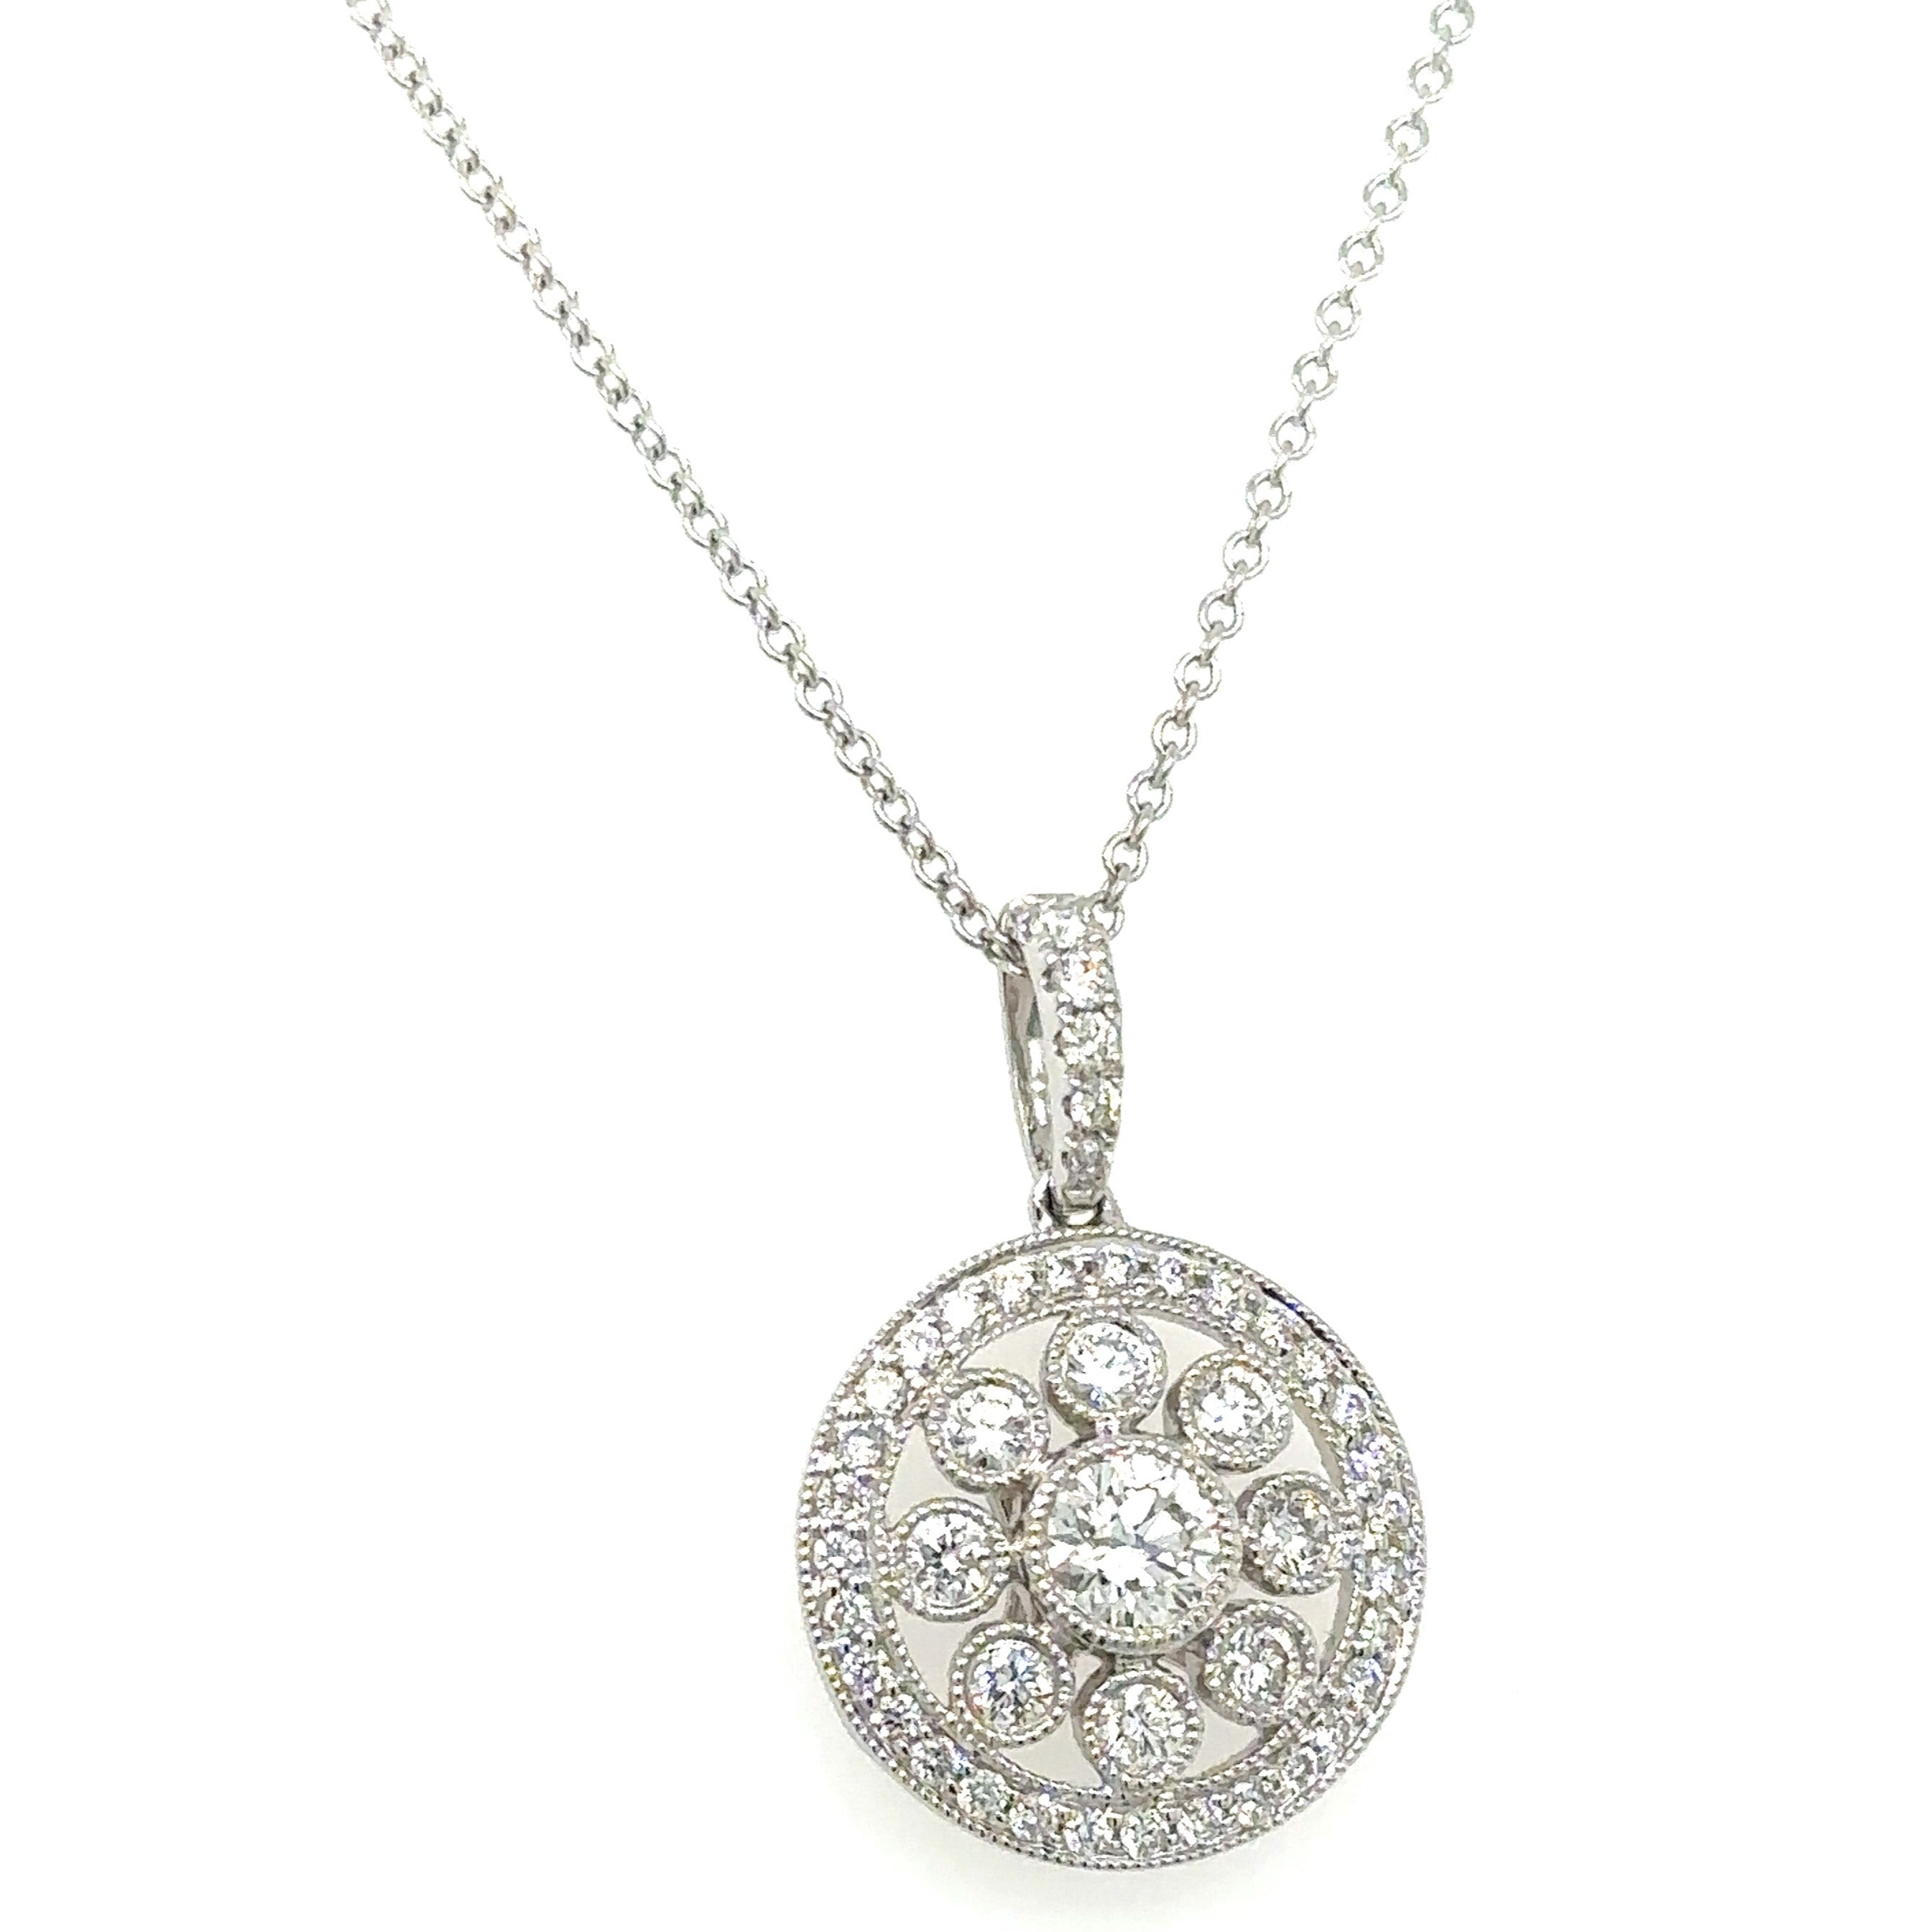 Diamond Filigree Pendant 0.59ct tw Necklace